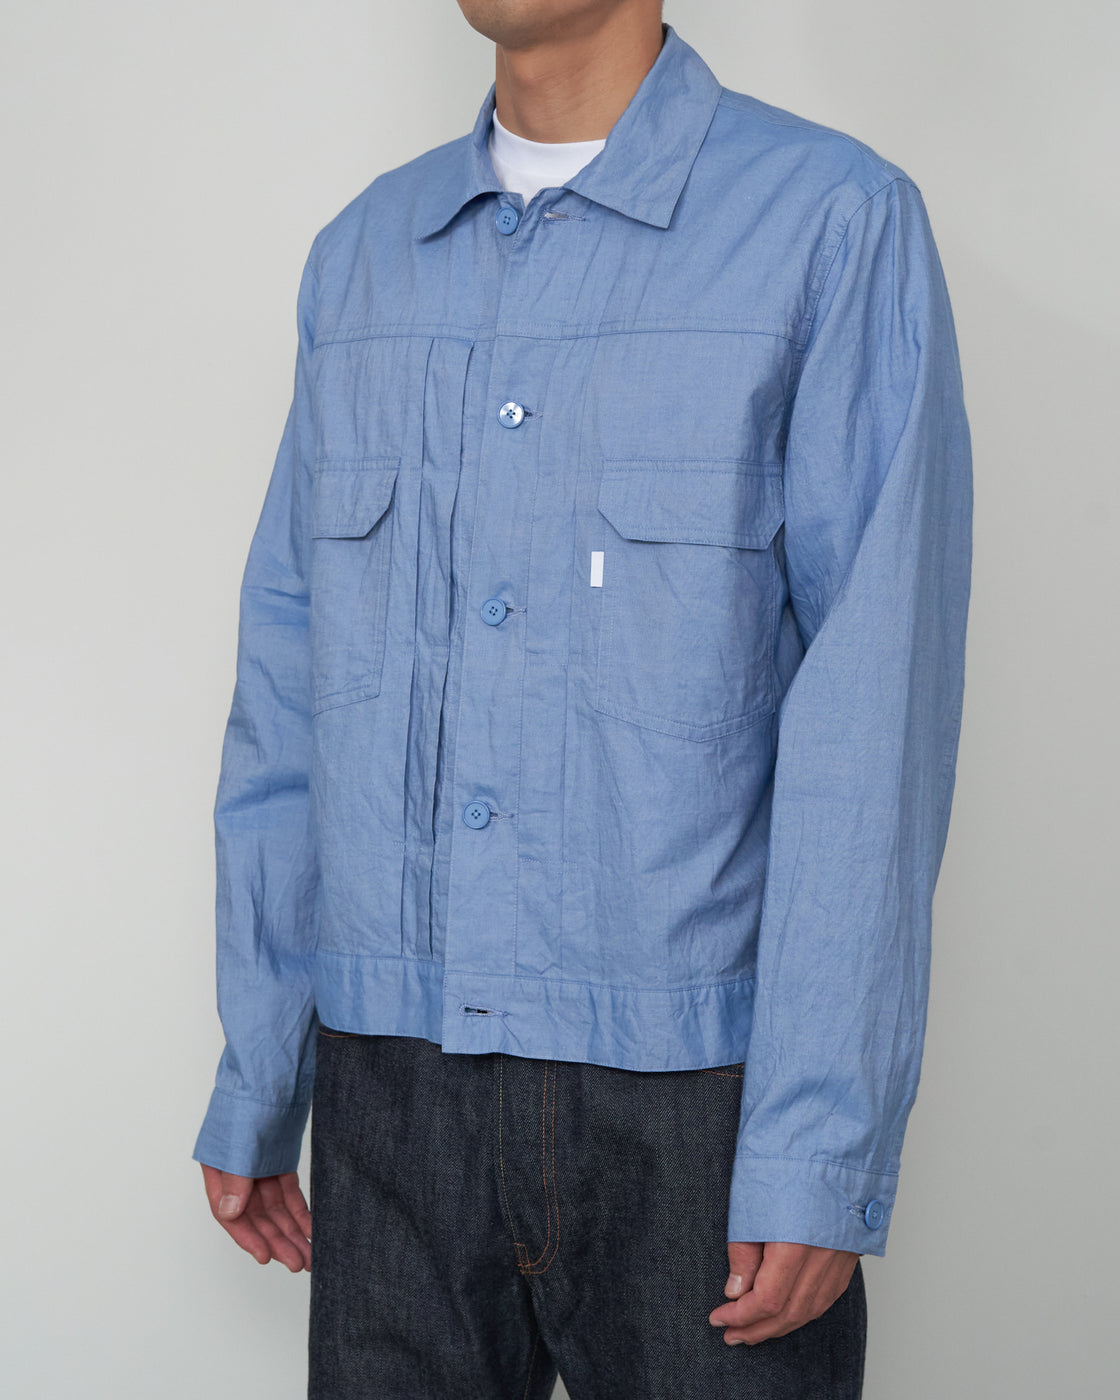 S H LVND-003 Trucker Shirt, Blue